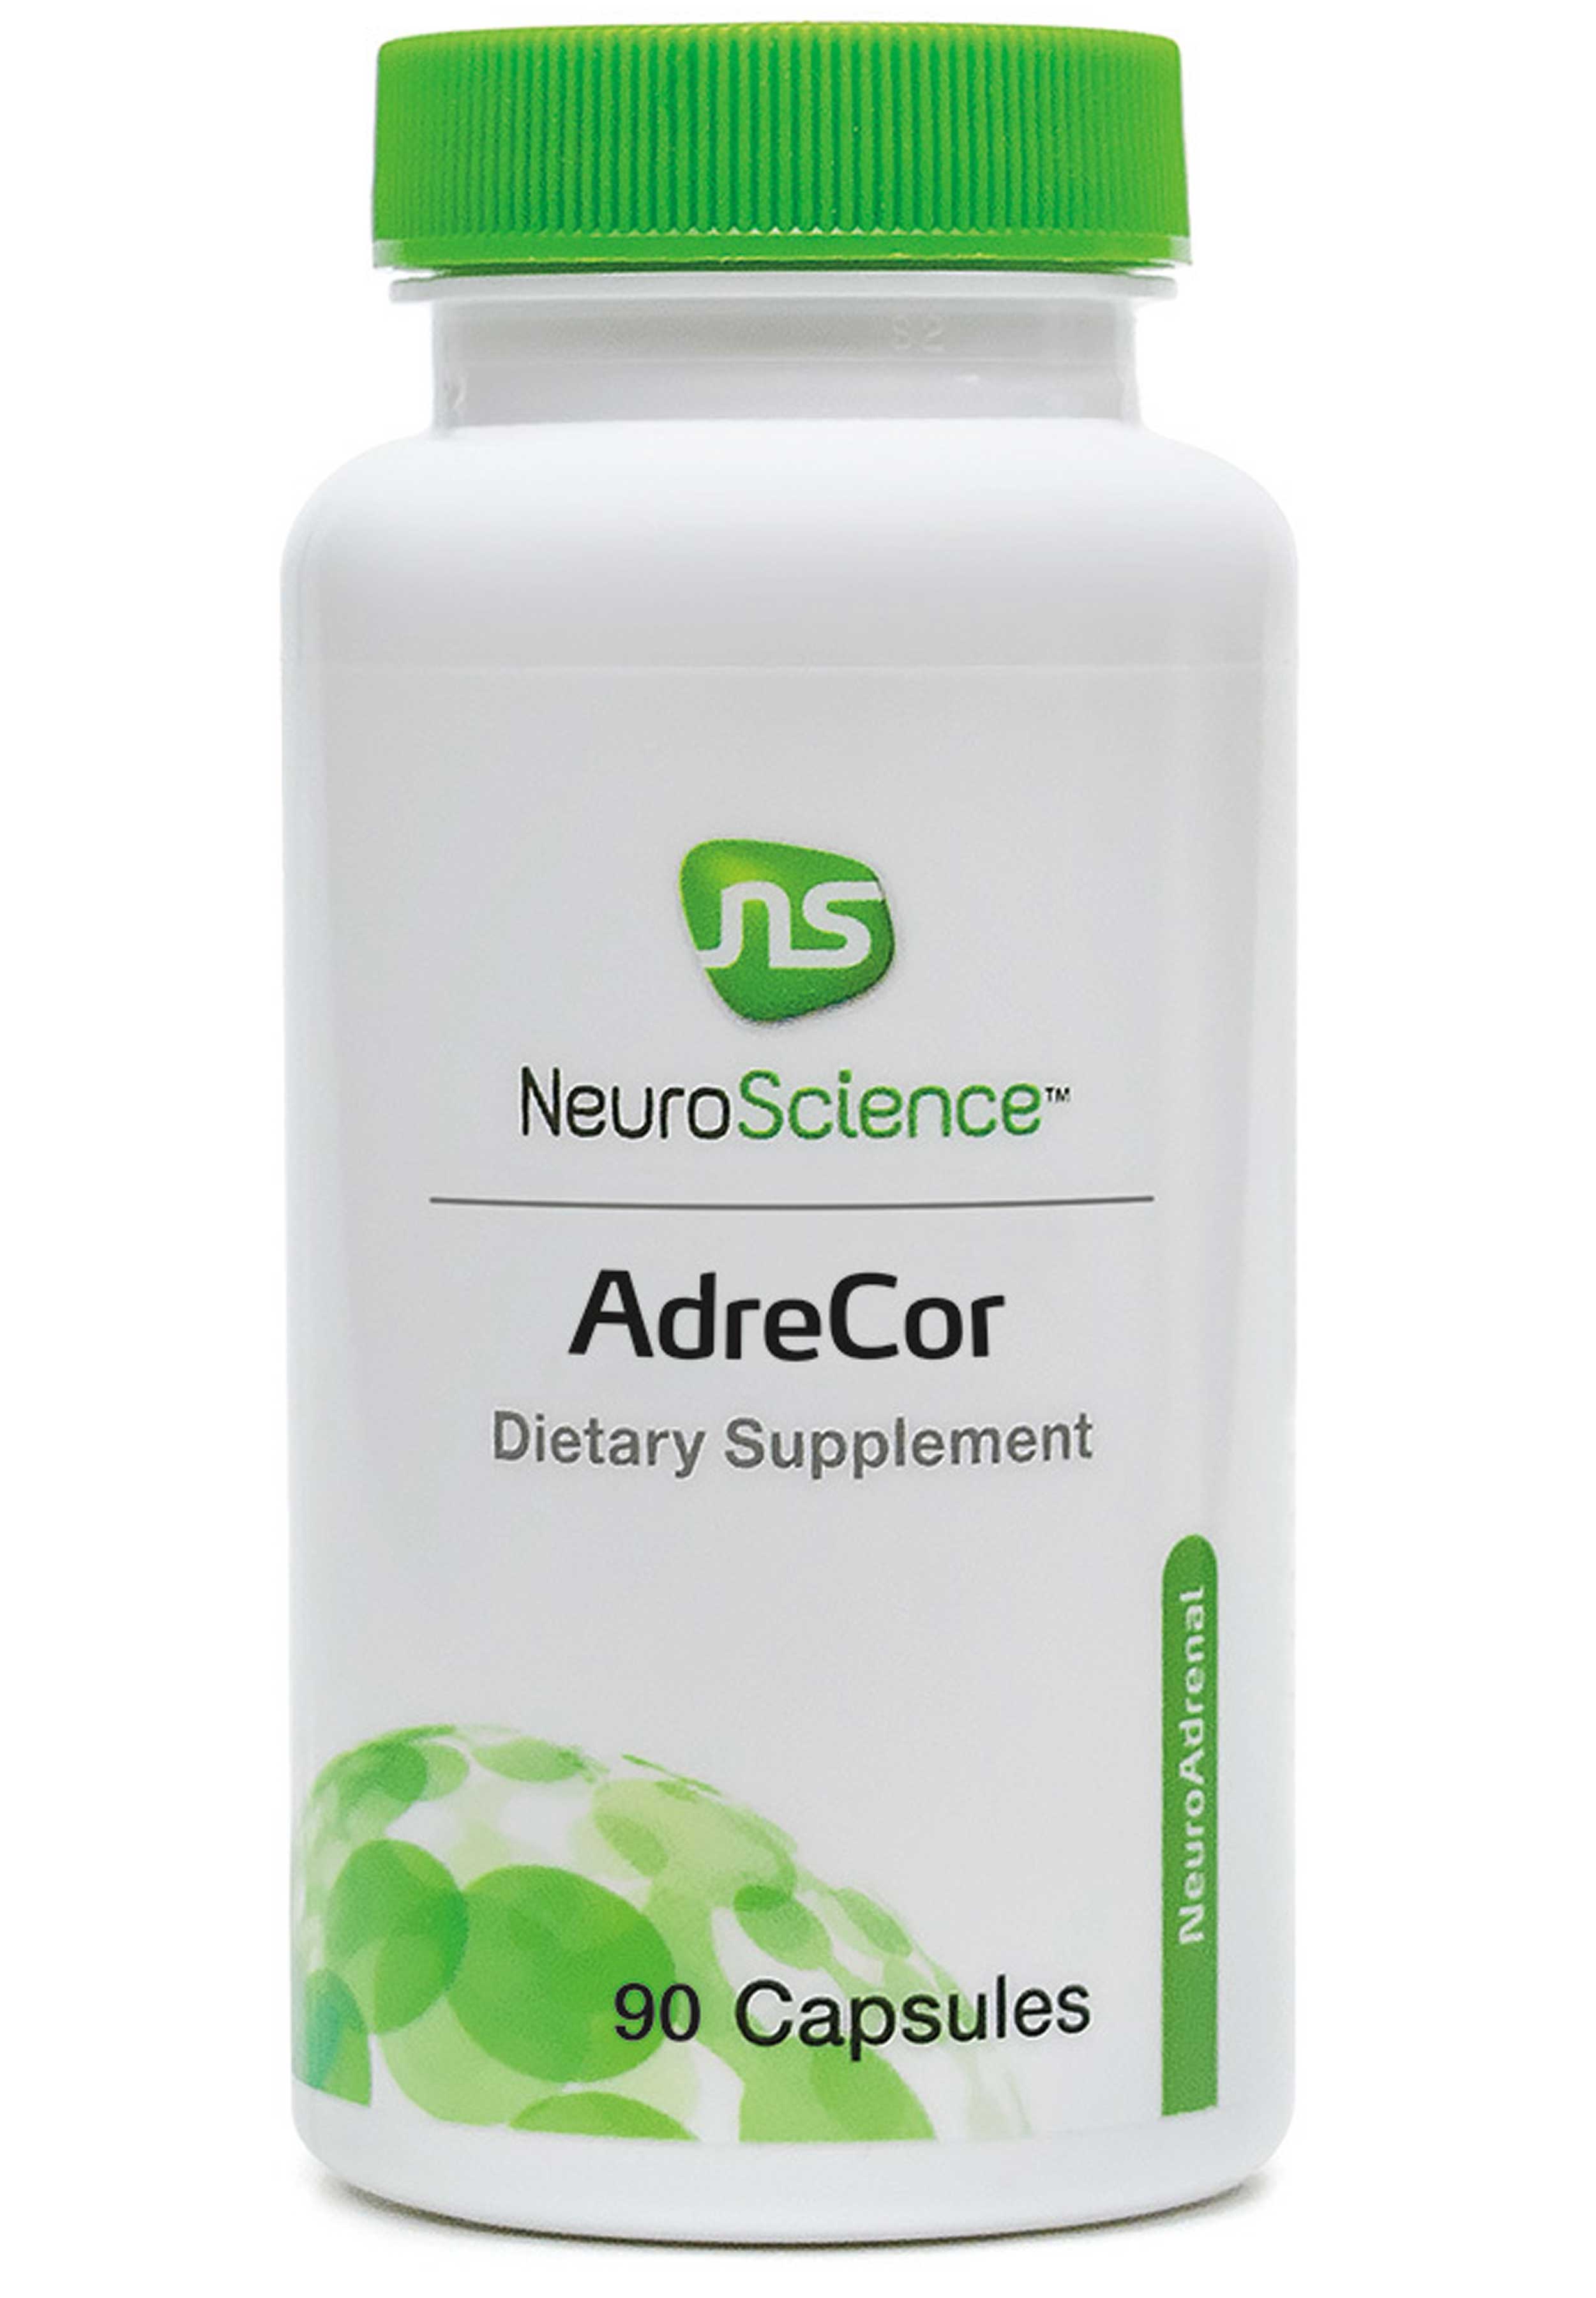 NeuroScience AdreCor